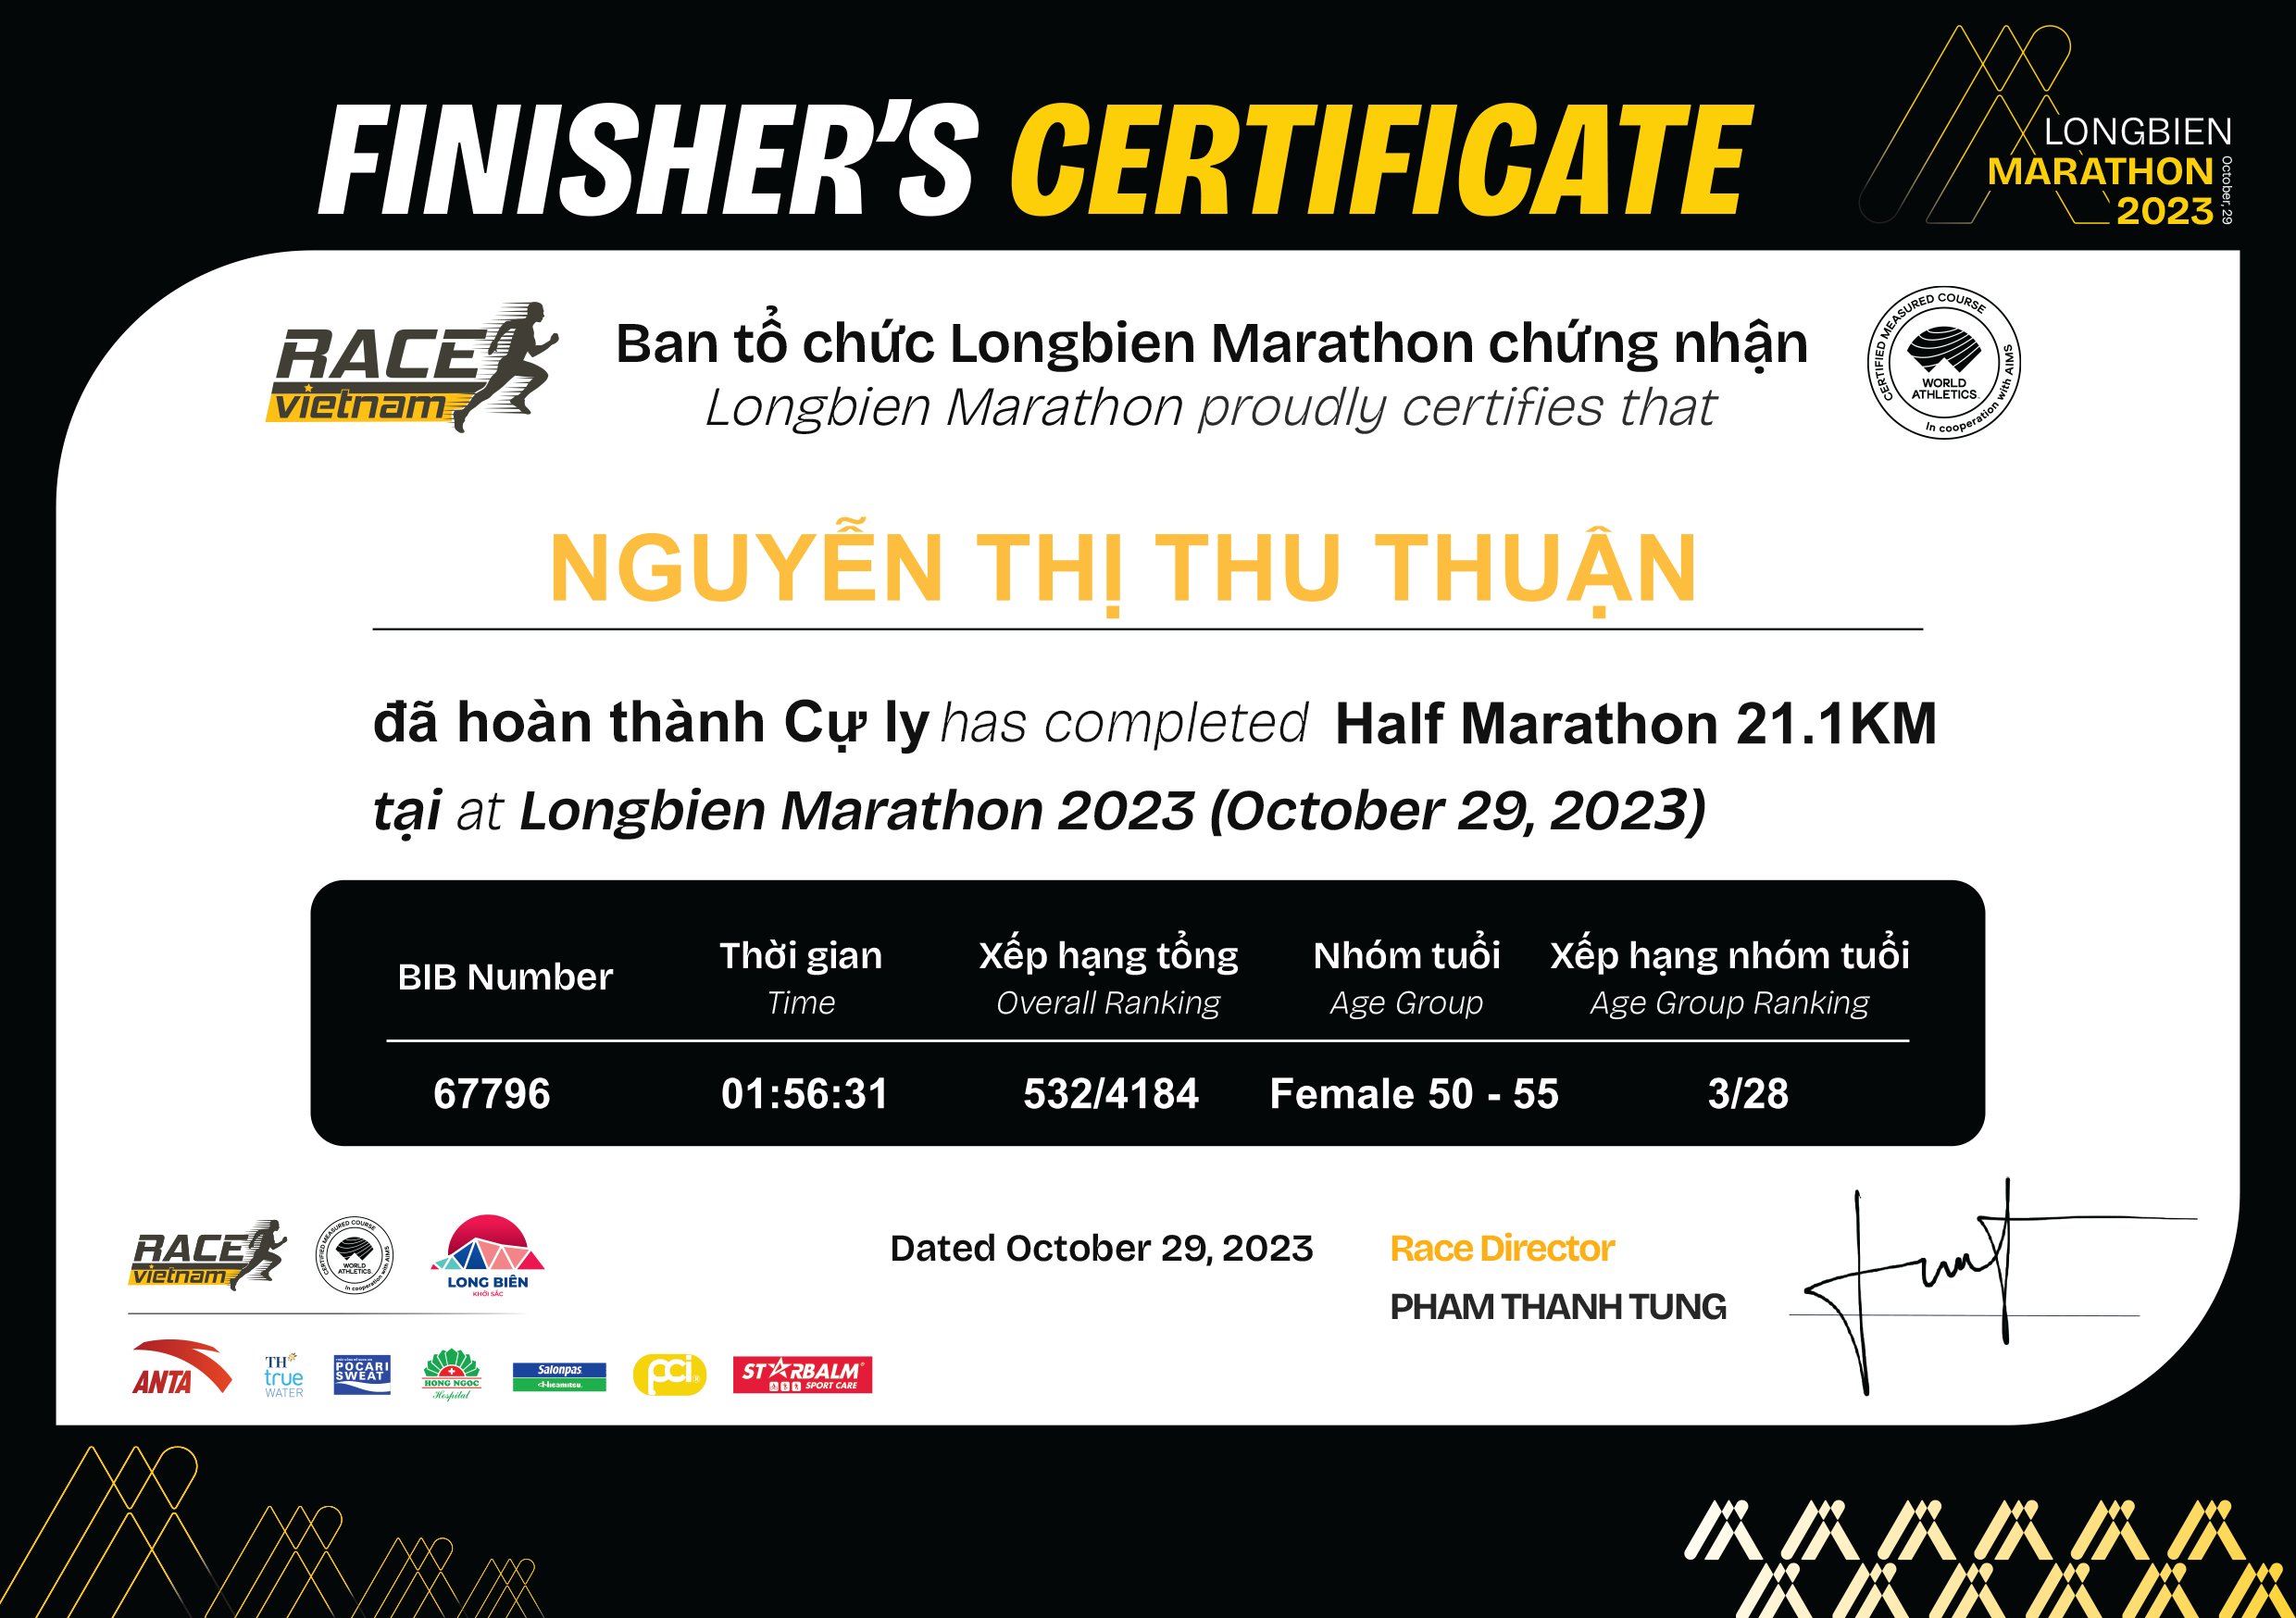 67796 - Nguyễn Thị Thu Thuận